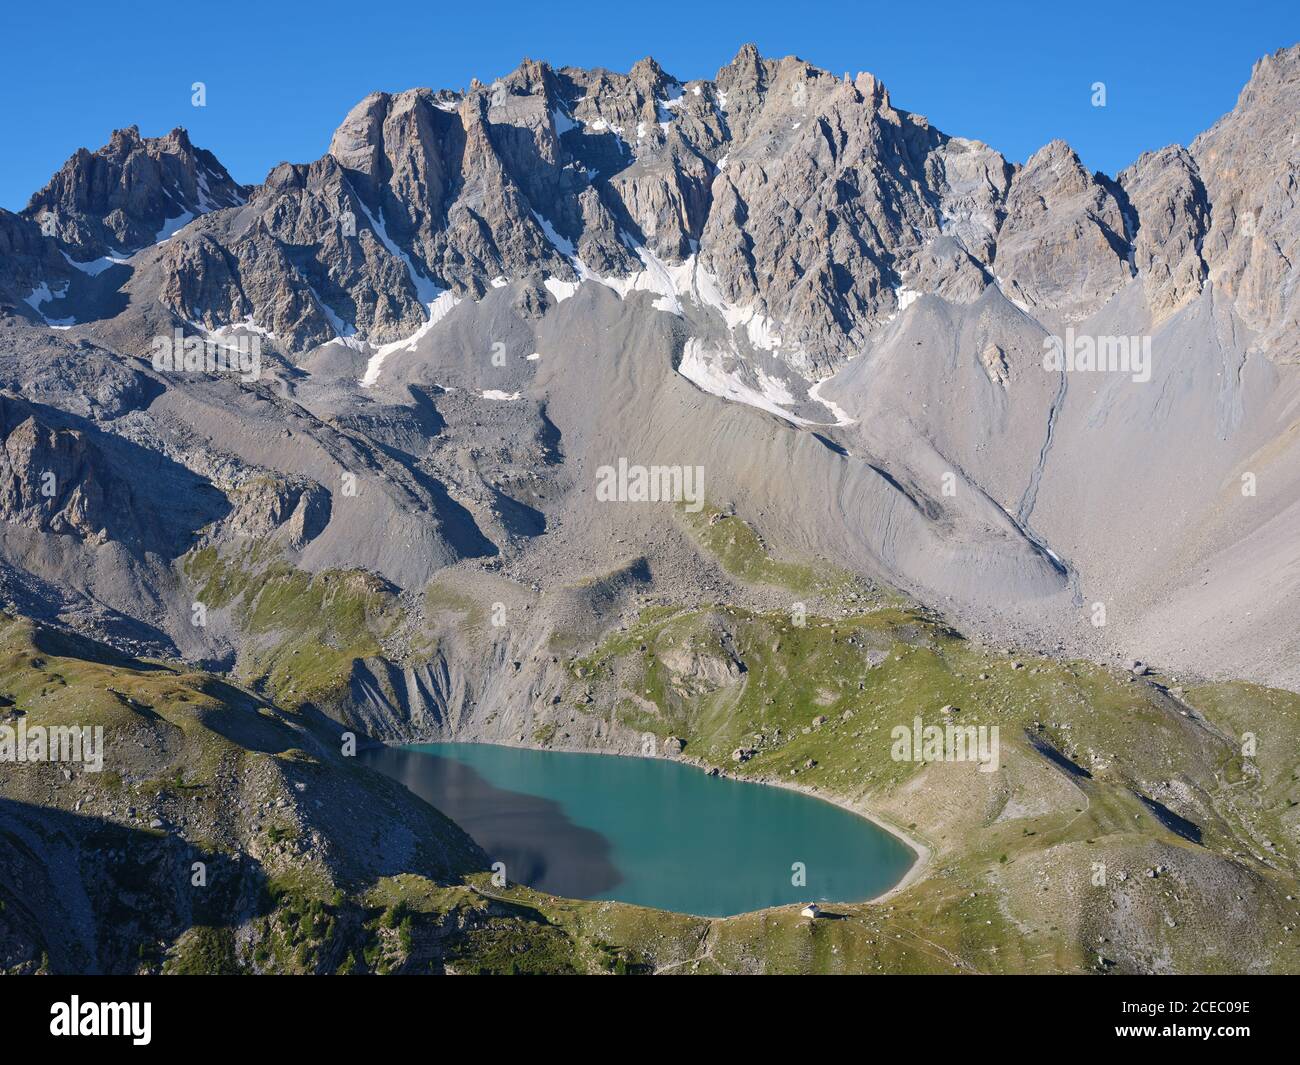 AERIAL VIEW. Lac Sainte-Anne, a tarn (alt: 2414m) at the foot of  pics de la Font Sancte (alt: 3385m). Ceillac, Hautes-Alpes, France. Stock Photo